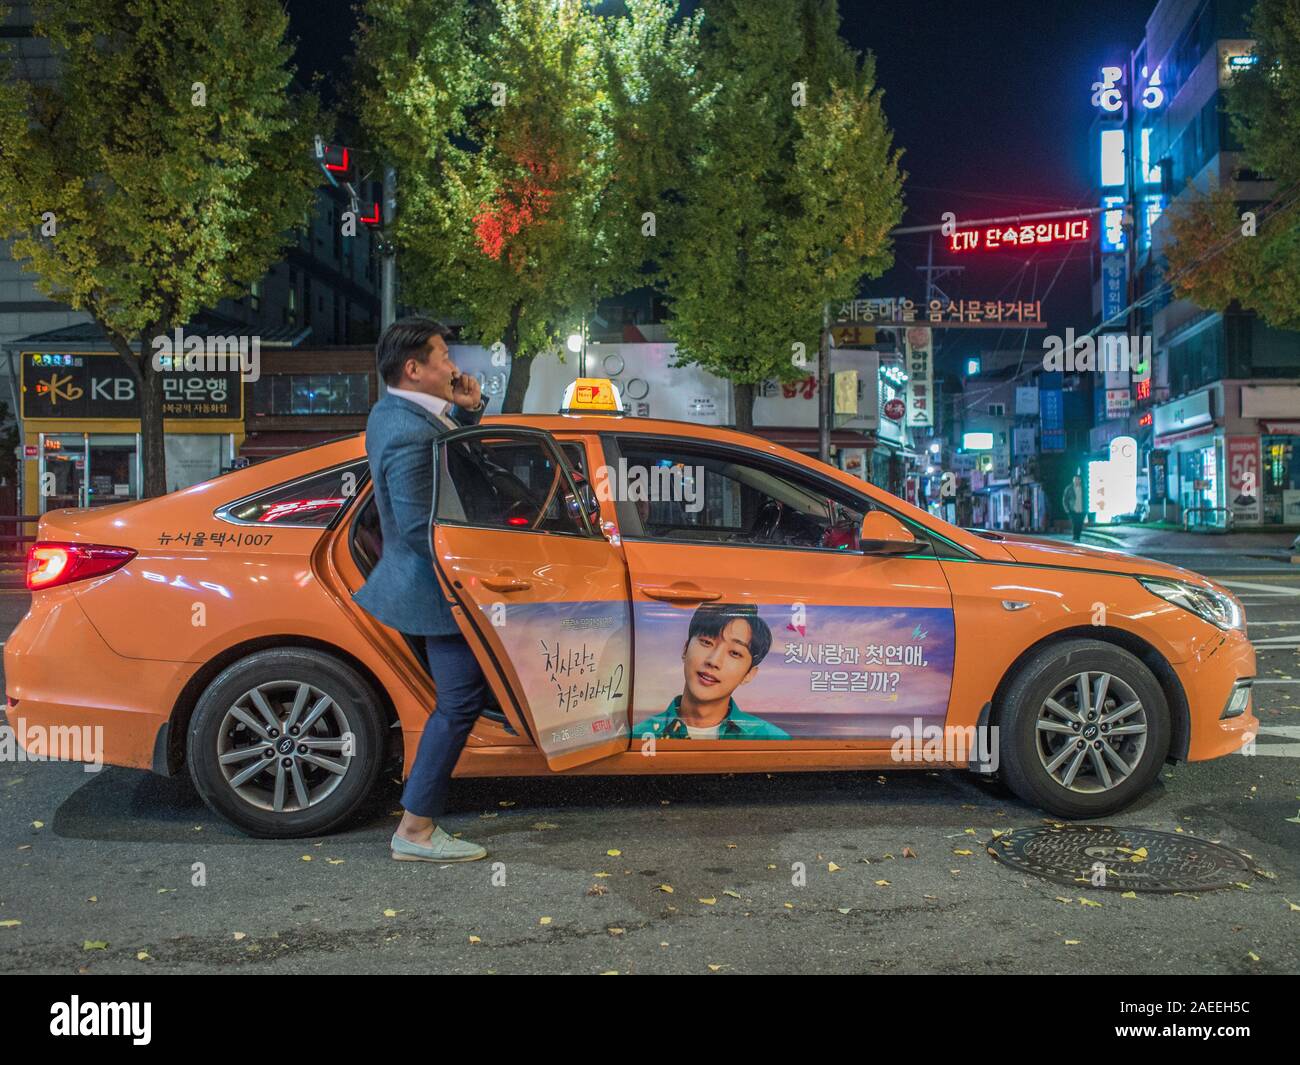 Un homme, parler sur smart phone, entrer au taxi orange, près de la station de Gyeongbokgung, night street, Séoul, Corée du Sud. Banque D'Images